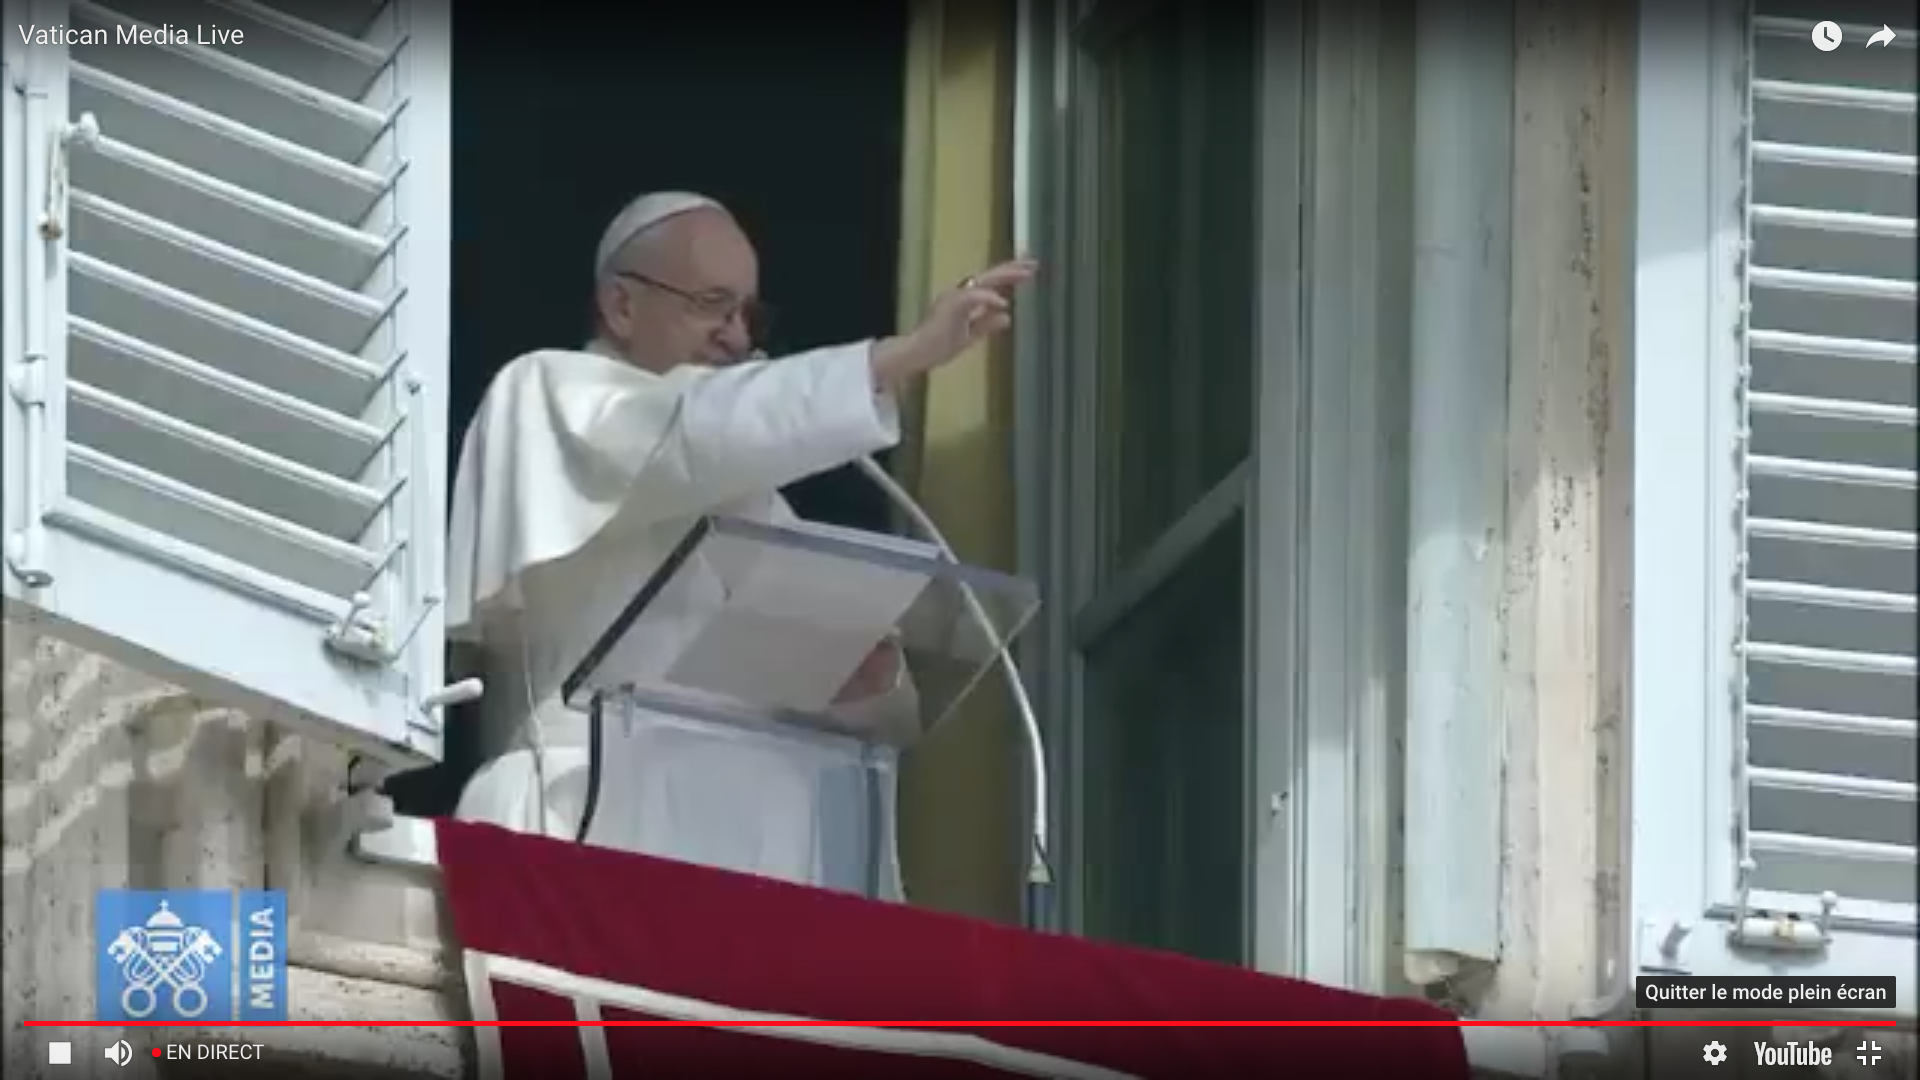 Angélus 04/03/2018 capture @ Vatican Media